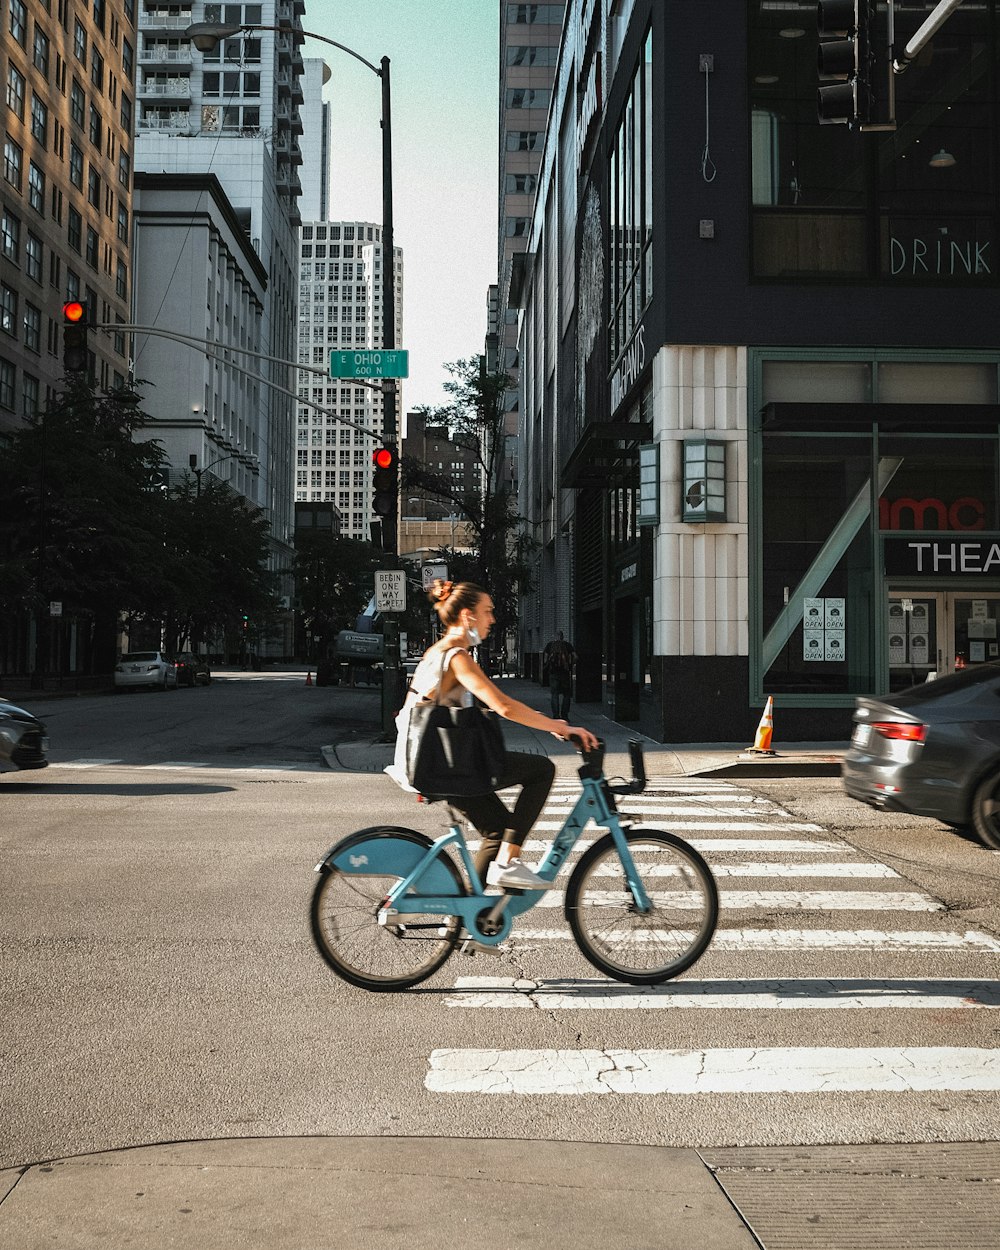 homem na camisa preta que anda de bicicleta na faixa de pedestres durante o dia